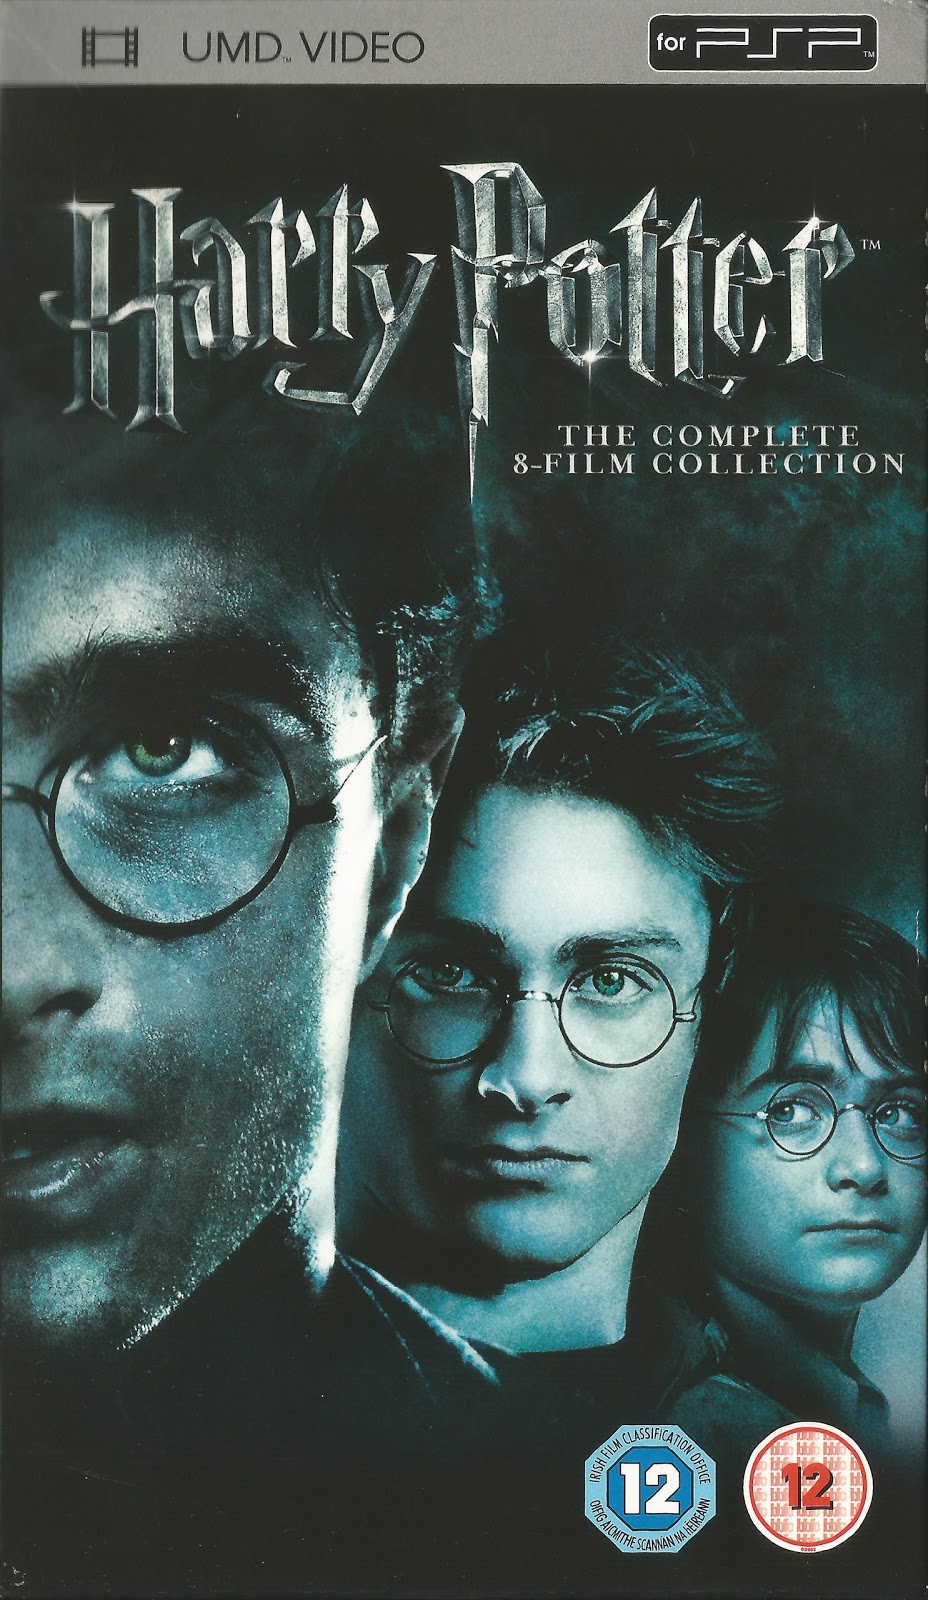 Coleção Completa Dvds Filmes Harry Potter ( 8 Filmes